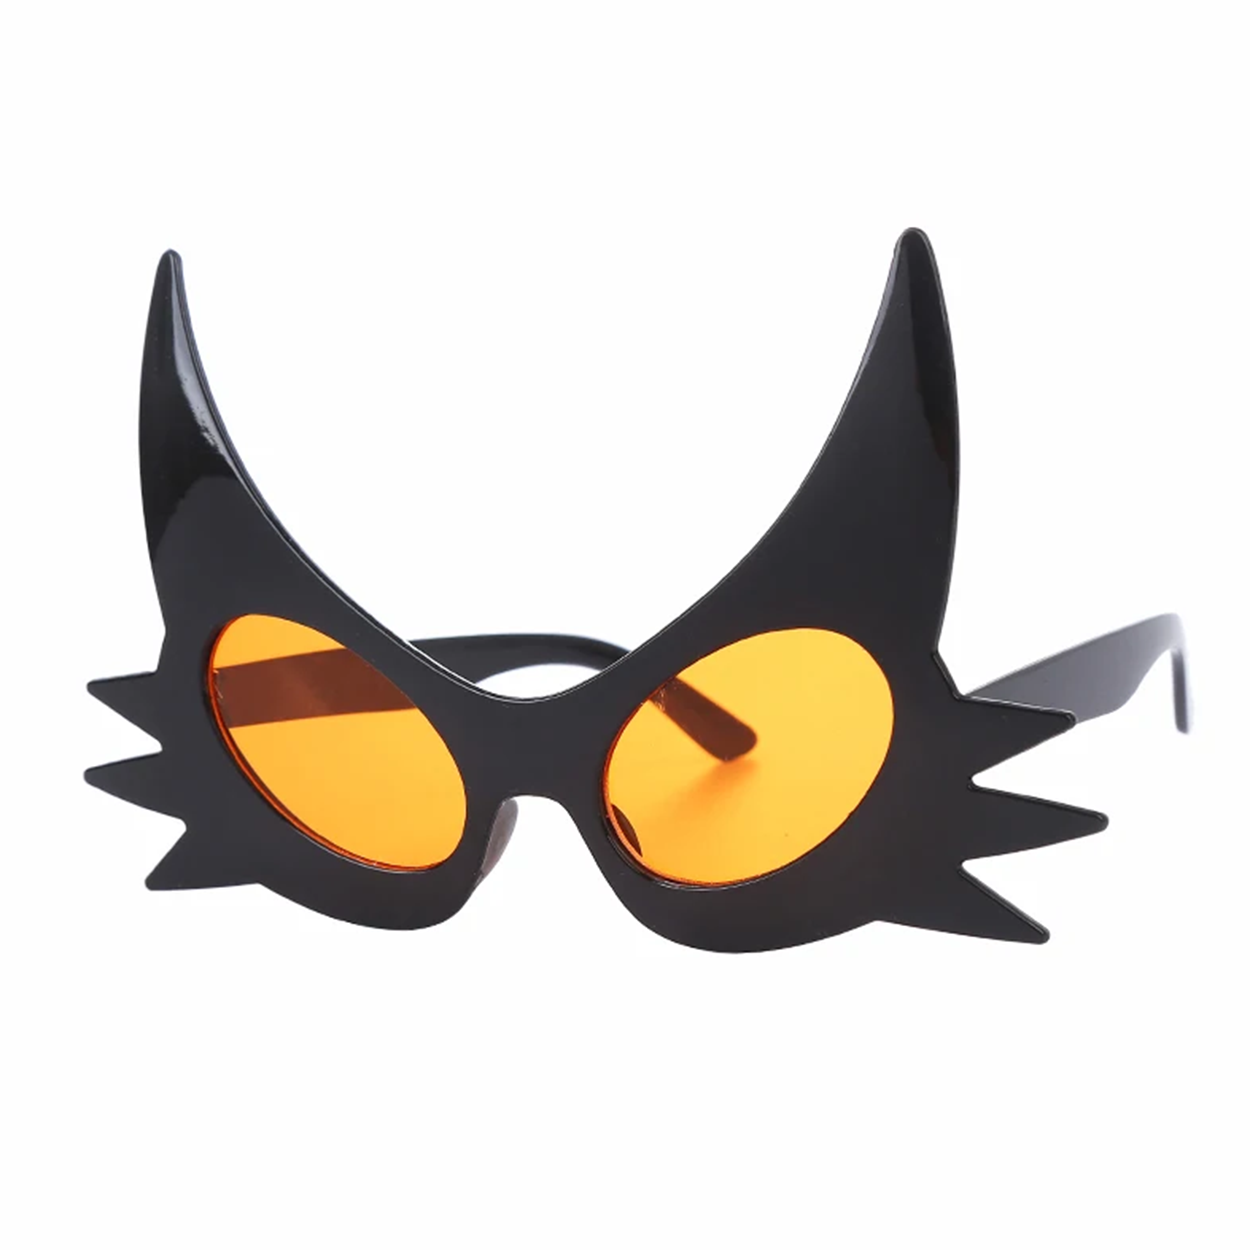 Siyah Renk Bıyık Tasarımlı Kedi Gözlüğü 19x11 cm (CLZ)